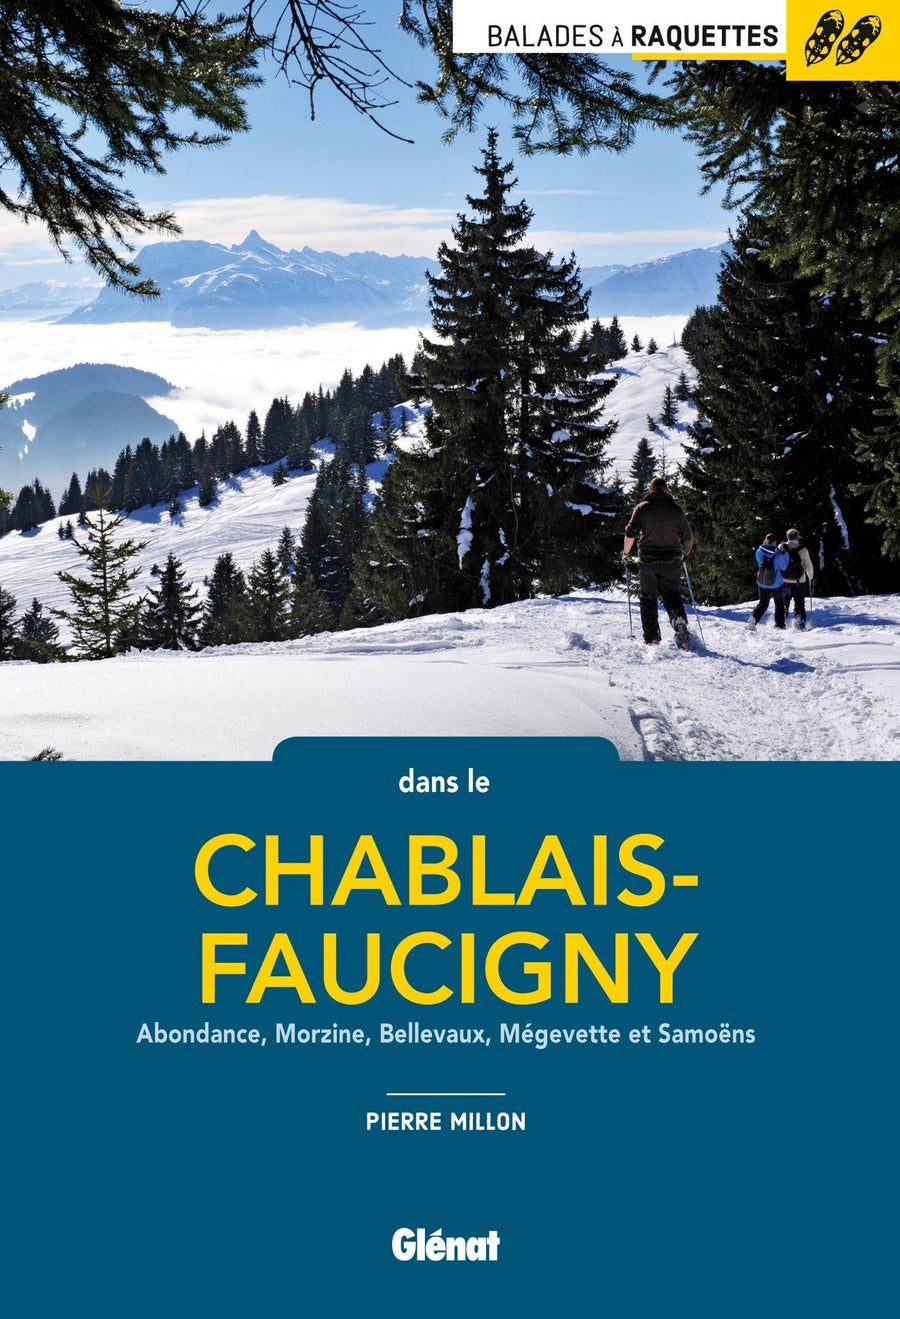 Guide de balades en raquettes - Chablais-Faucigny, Abondance, Morzine | Glénat guide de randonnée Glénat 